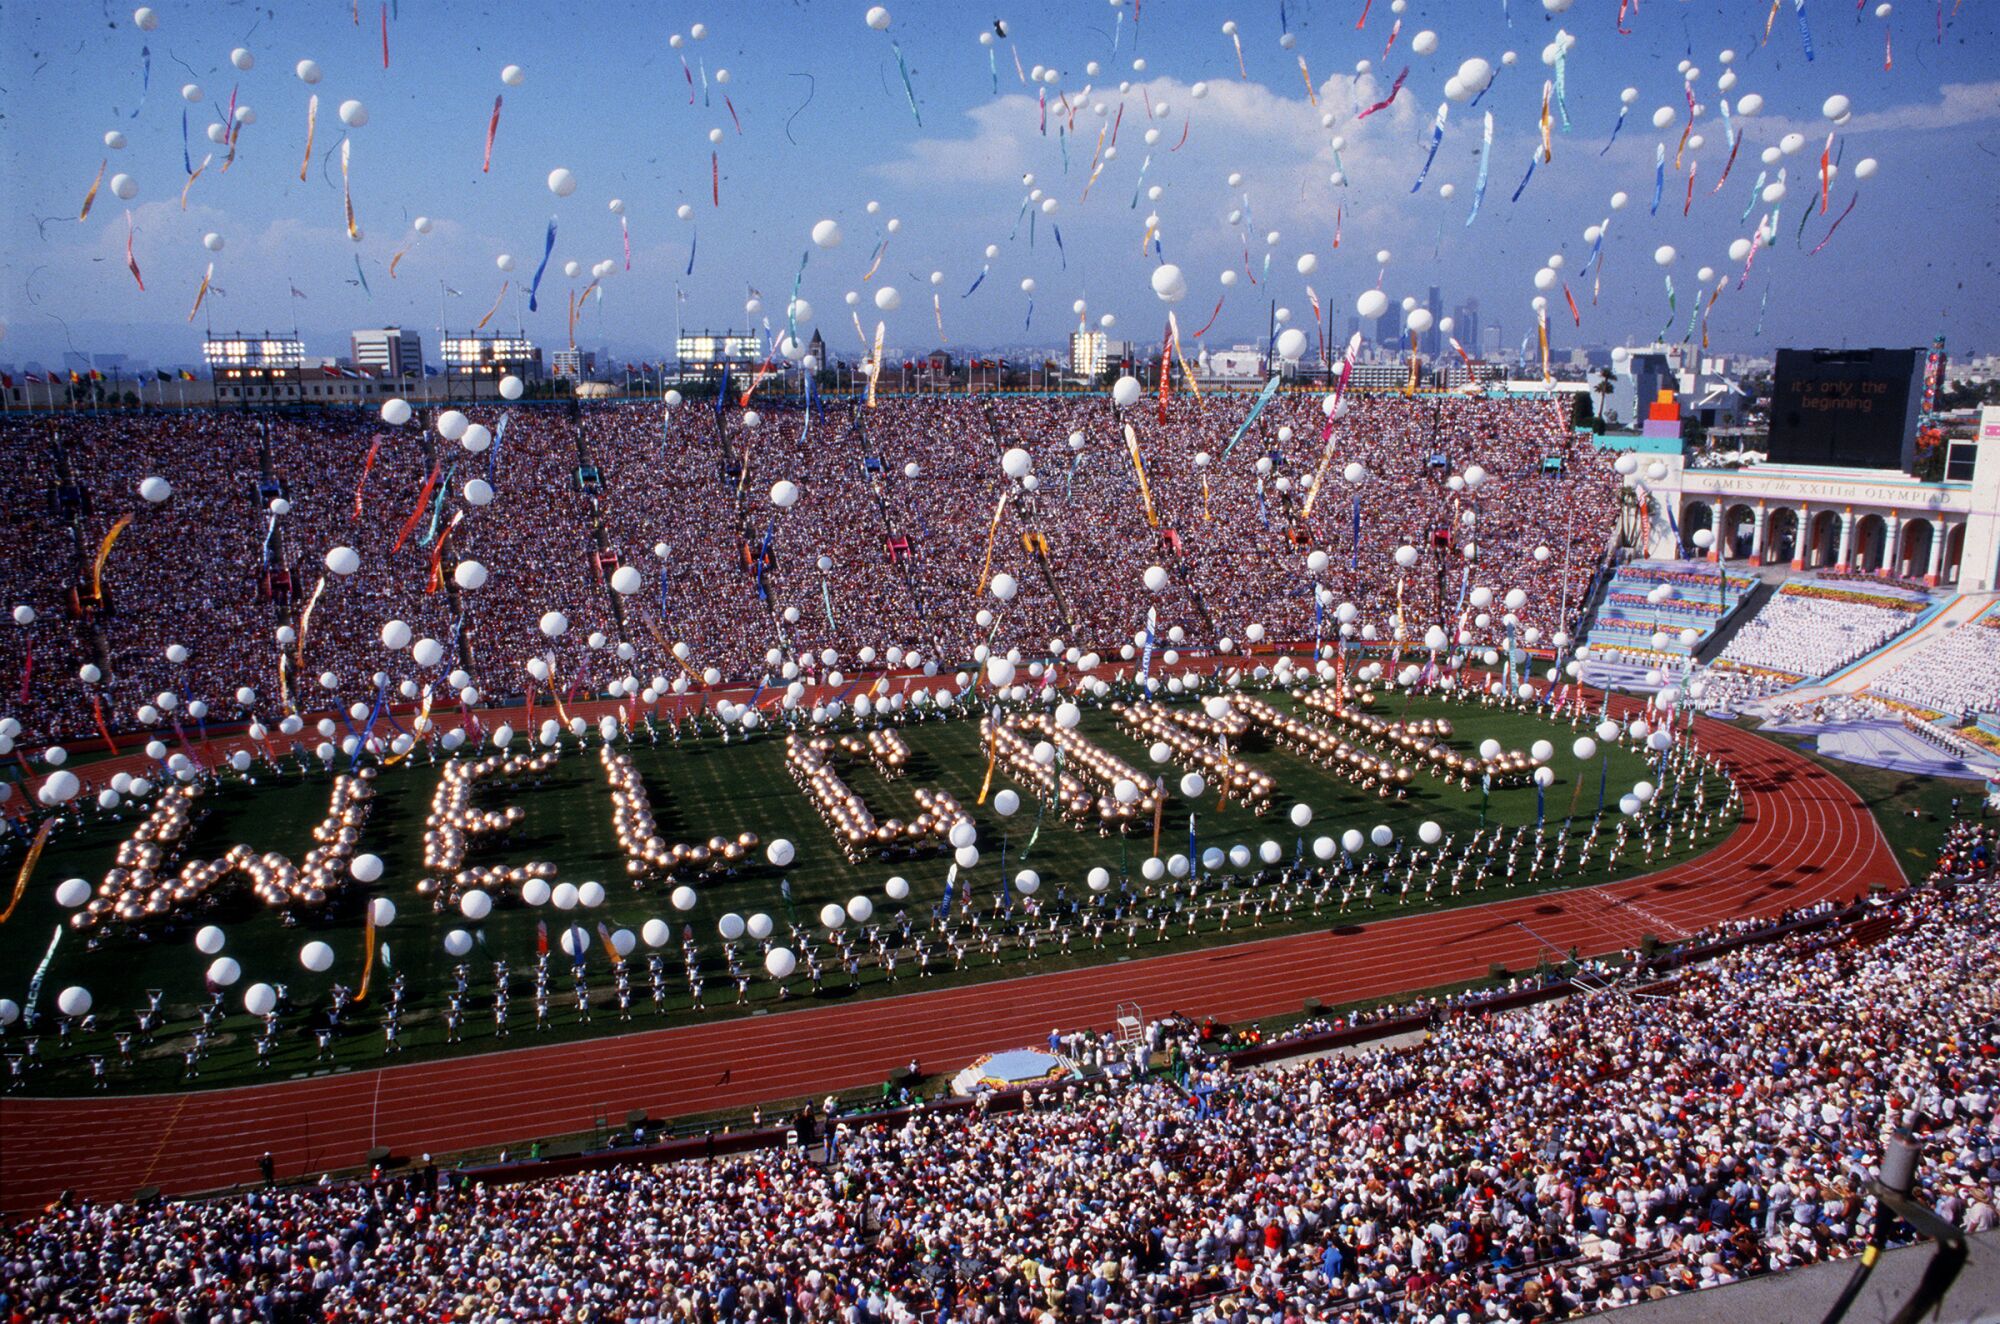 Сцена в Колизее в Лос-Анджелесе во время церемонии открытия Олимпийских игр 1984 года.